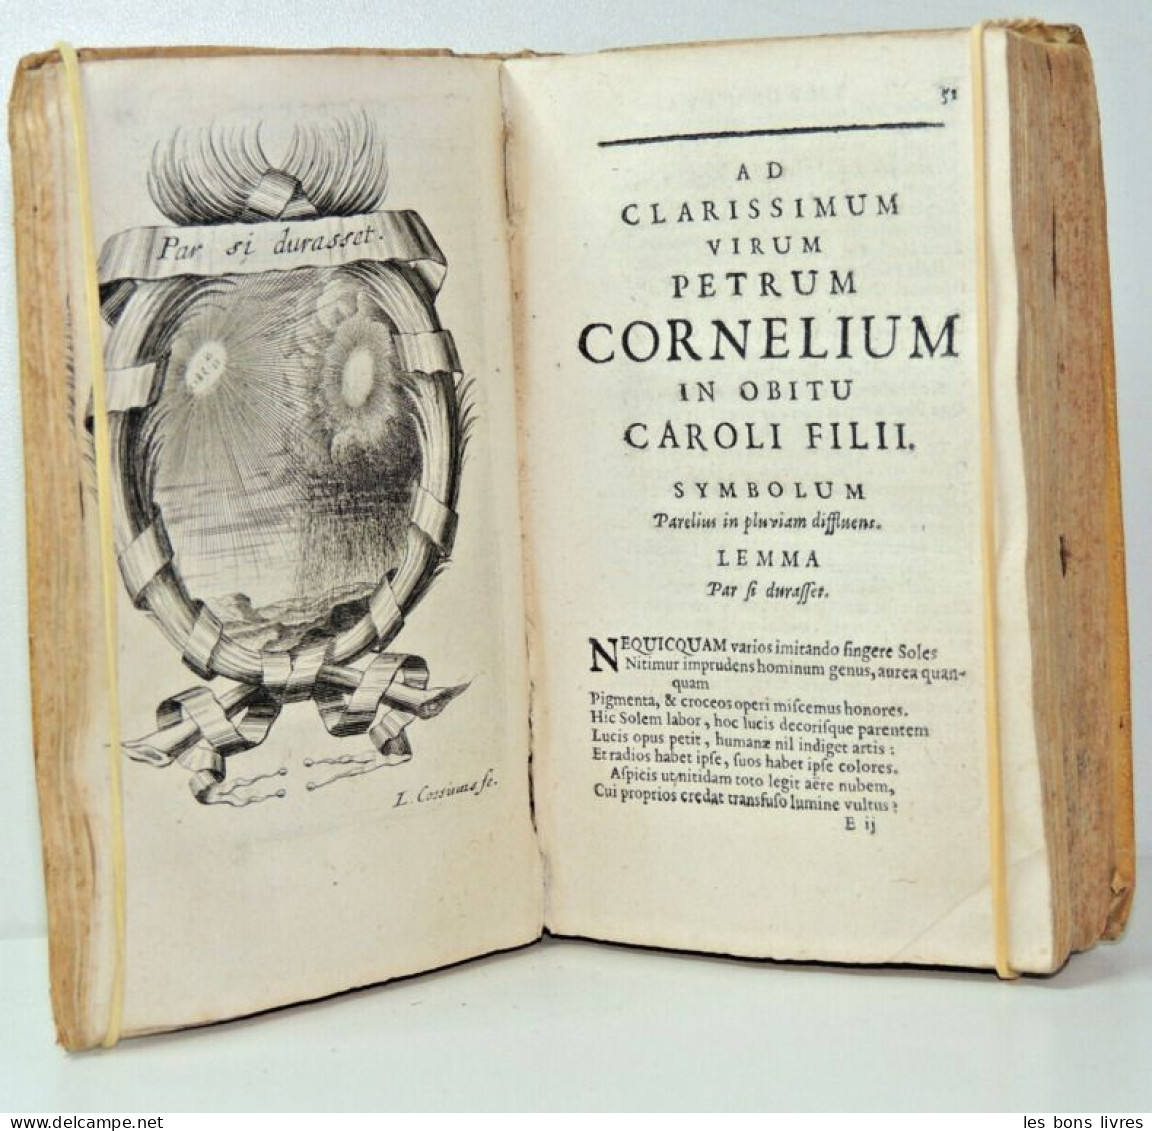 Rare. 1669. Ex manuscrit de Jean de la Fontaine. Caroli de la Rue. Idyllia.